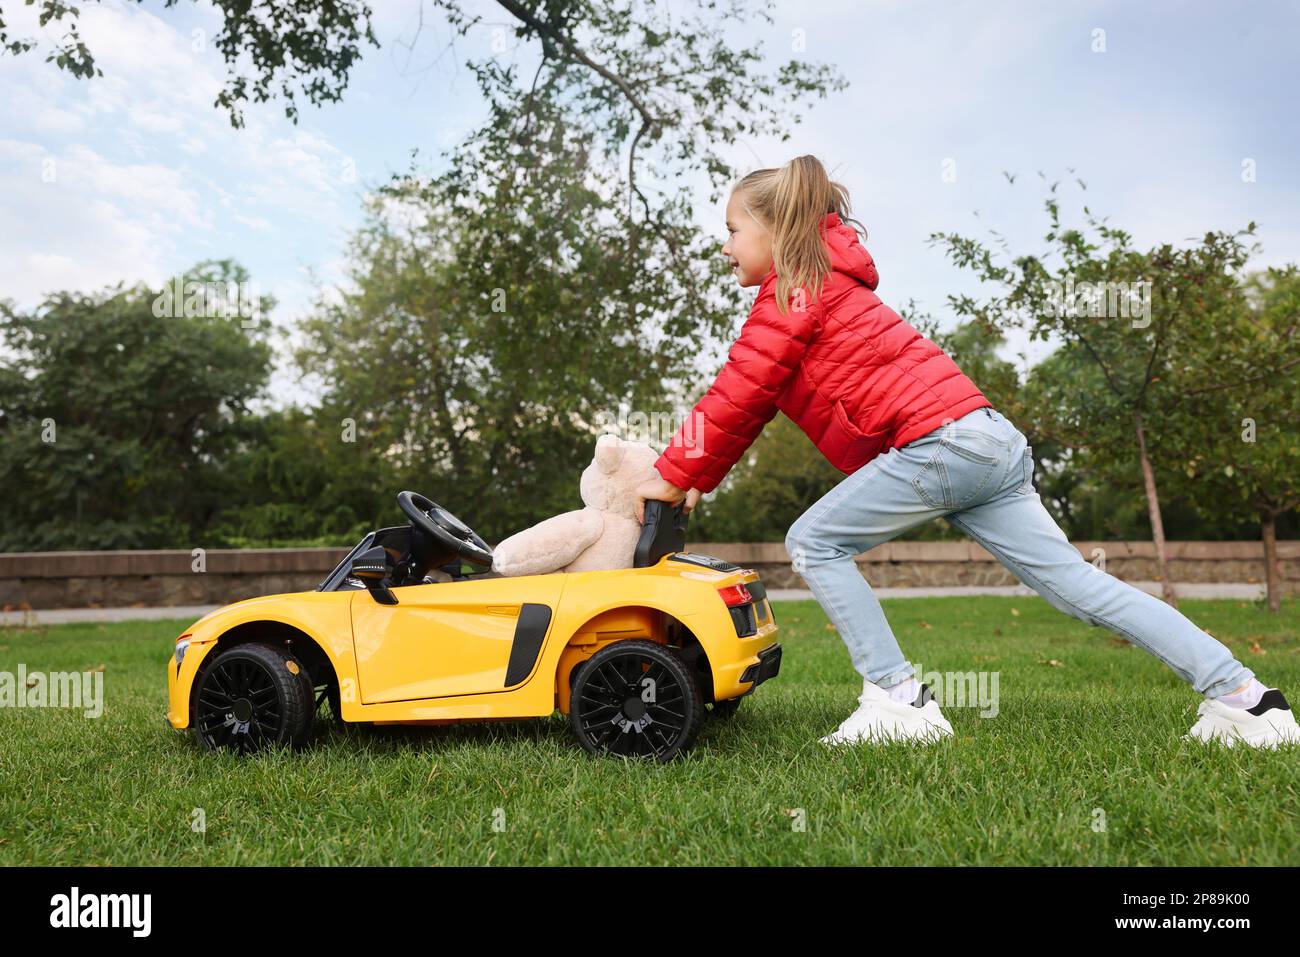 Ein süßes kleines Mädchen, das mit einem Spielzeugbären spielt, und ein Kinderauto auf dem Parkplatz Stockfoto